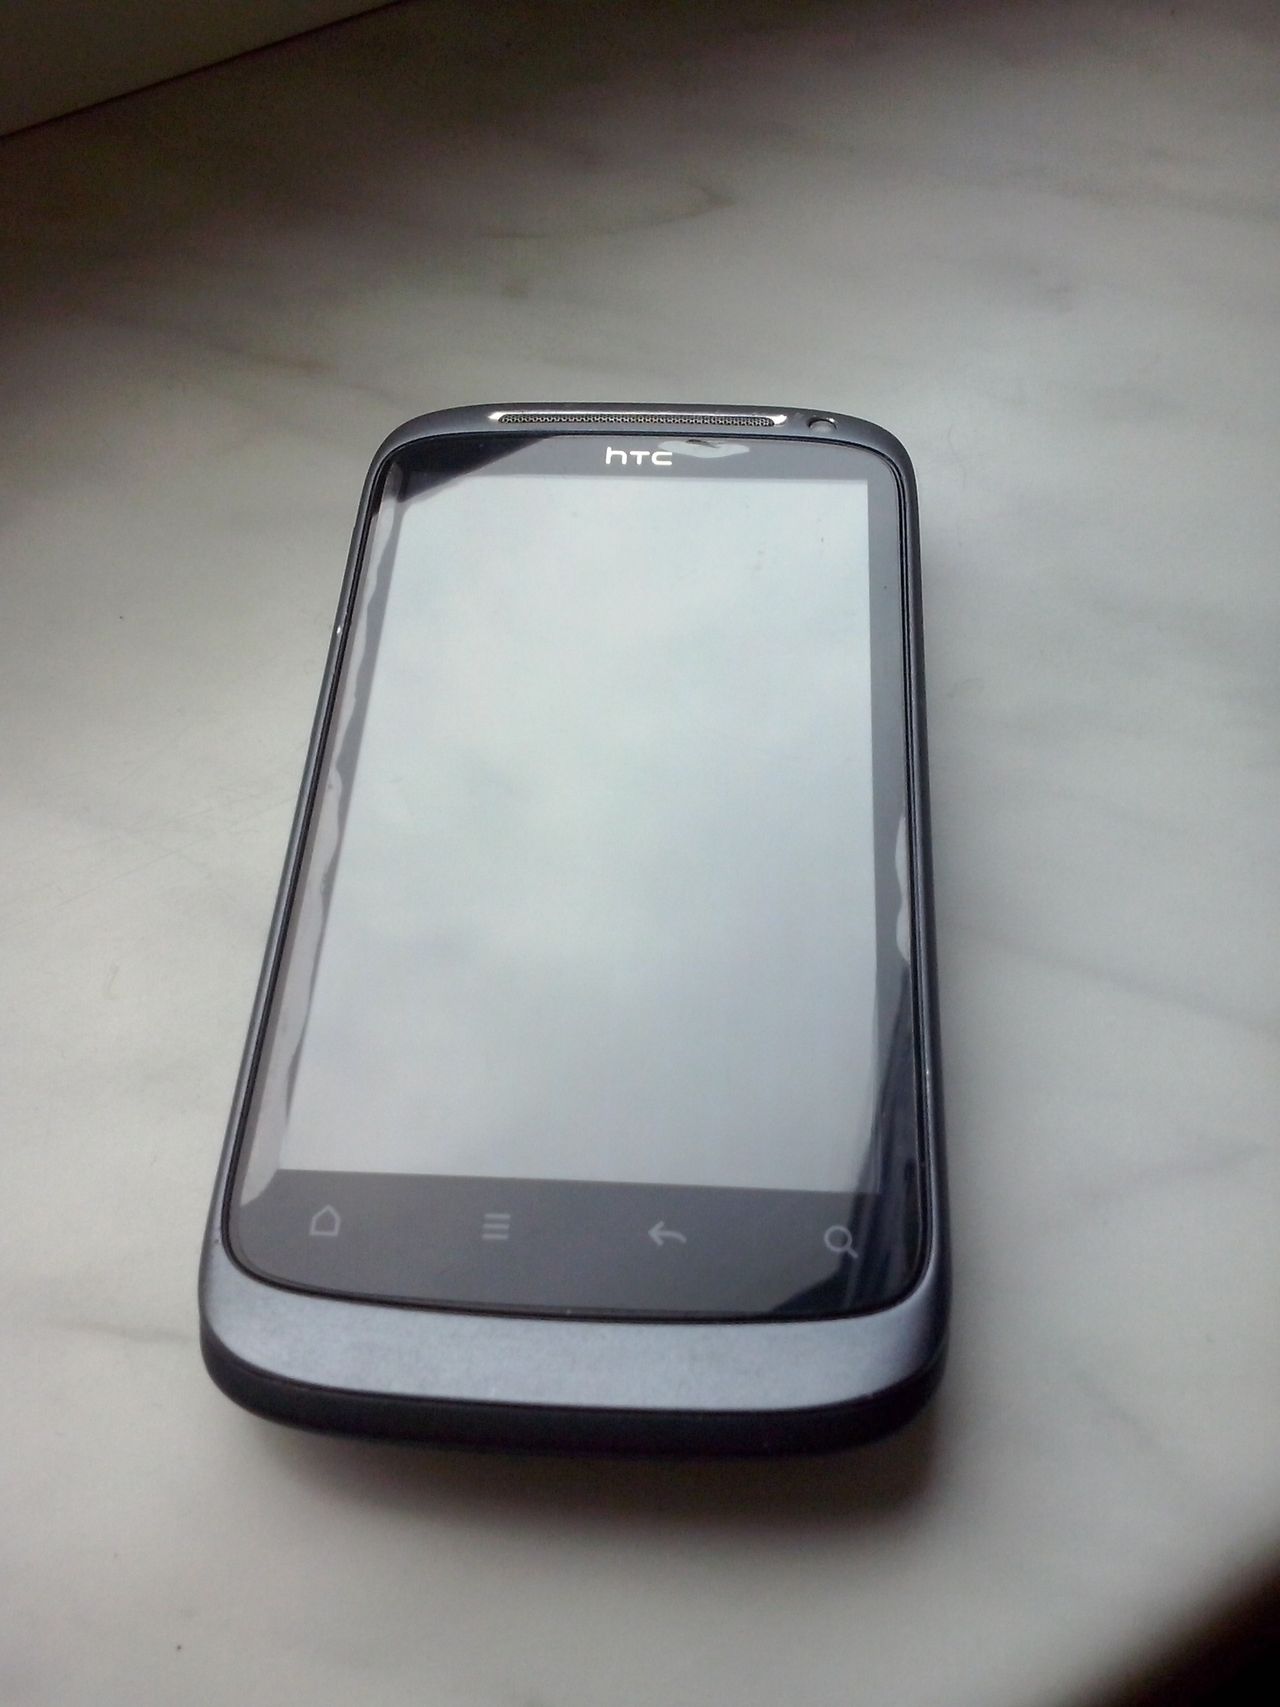 HTC Desire S - front telefonu z naklejoną folią.